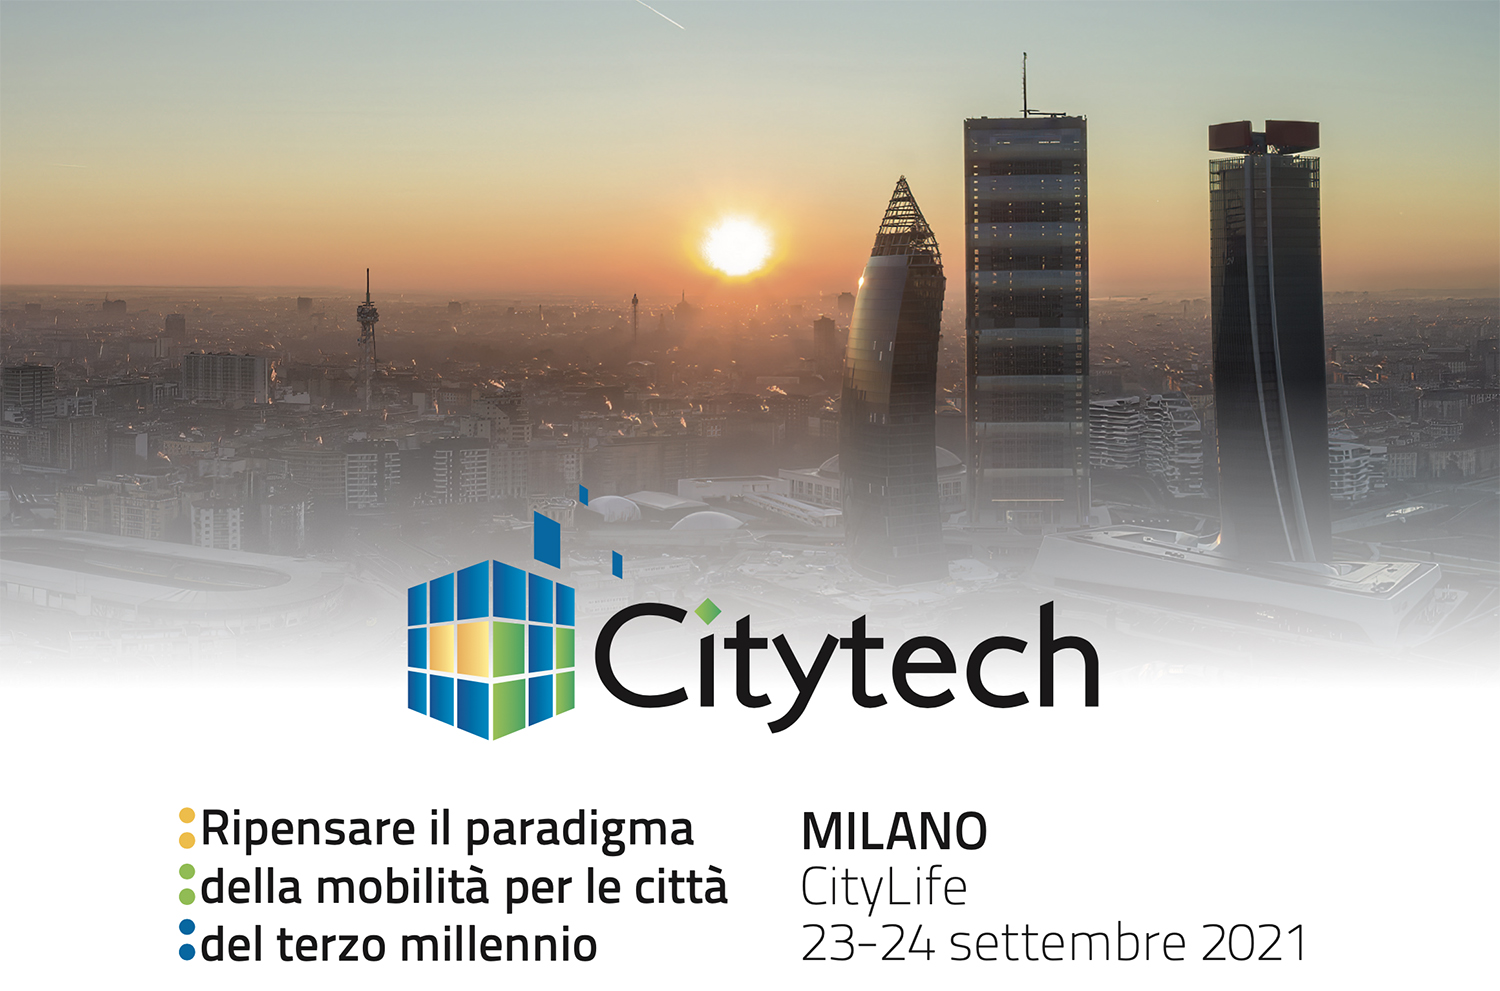 Citytech 2021 a CityLife MilanoCitytech 2021 a CityLife Milano